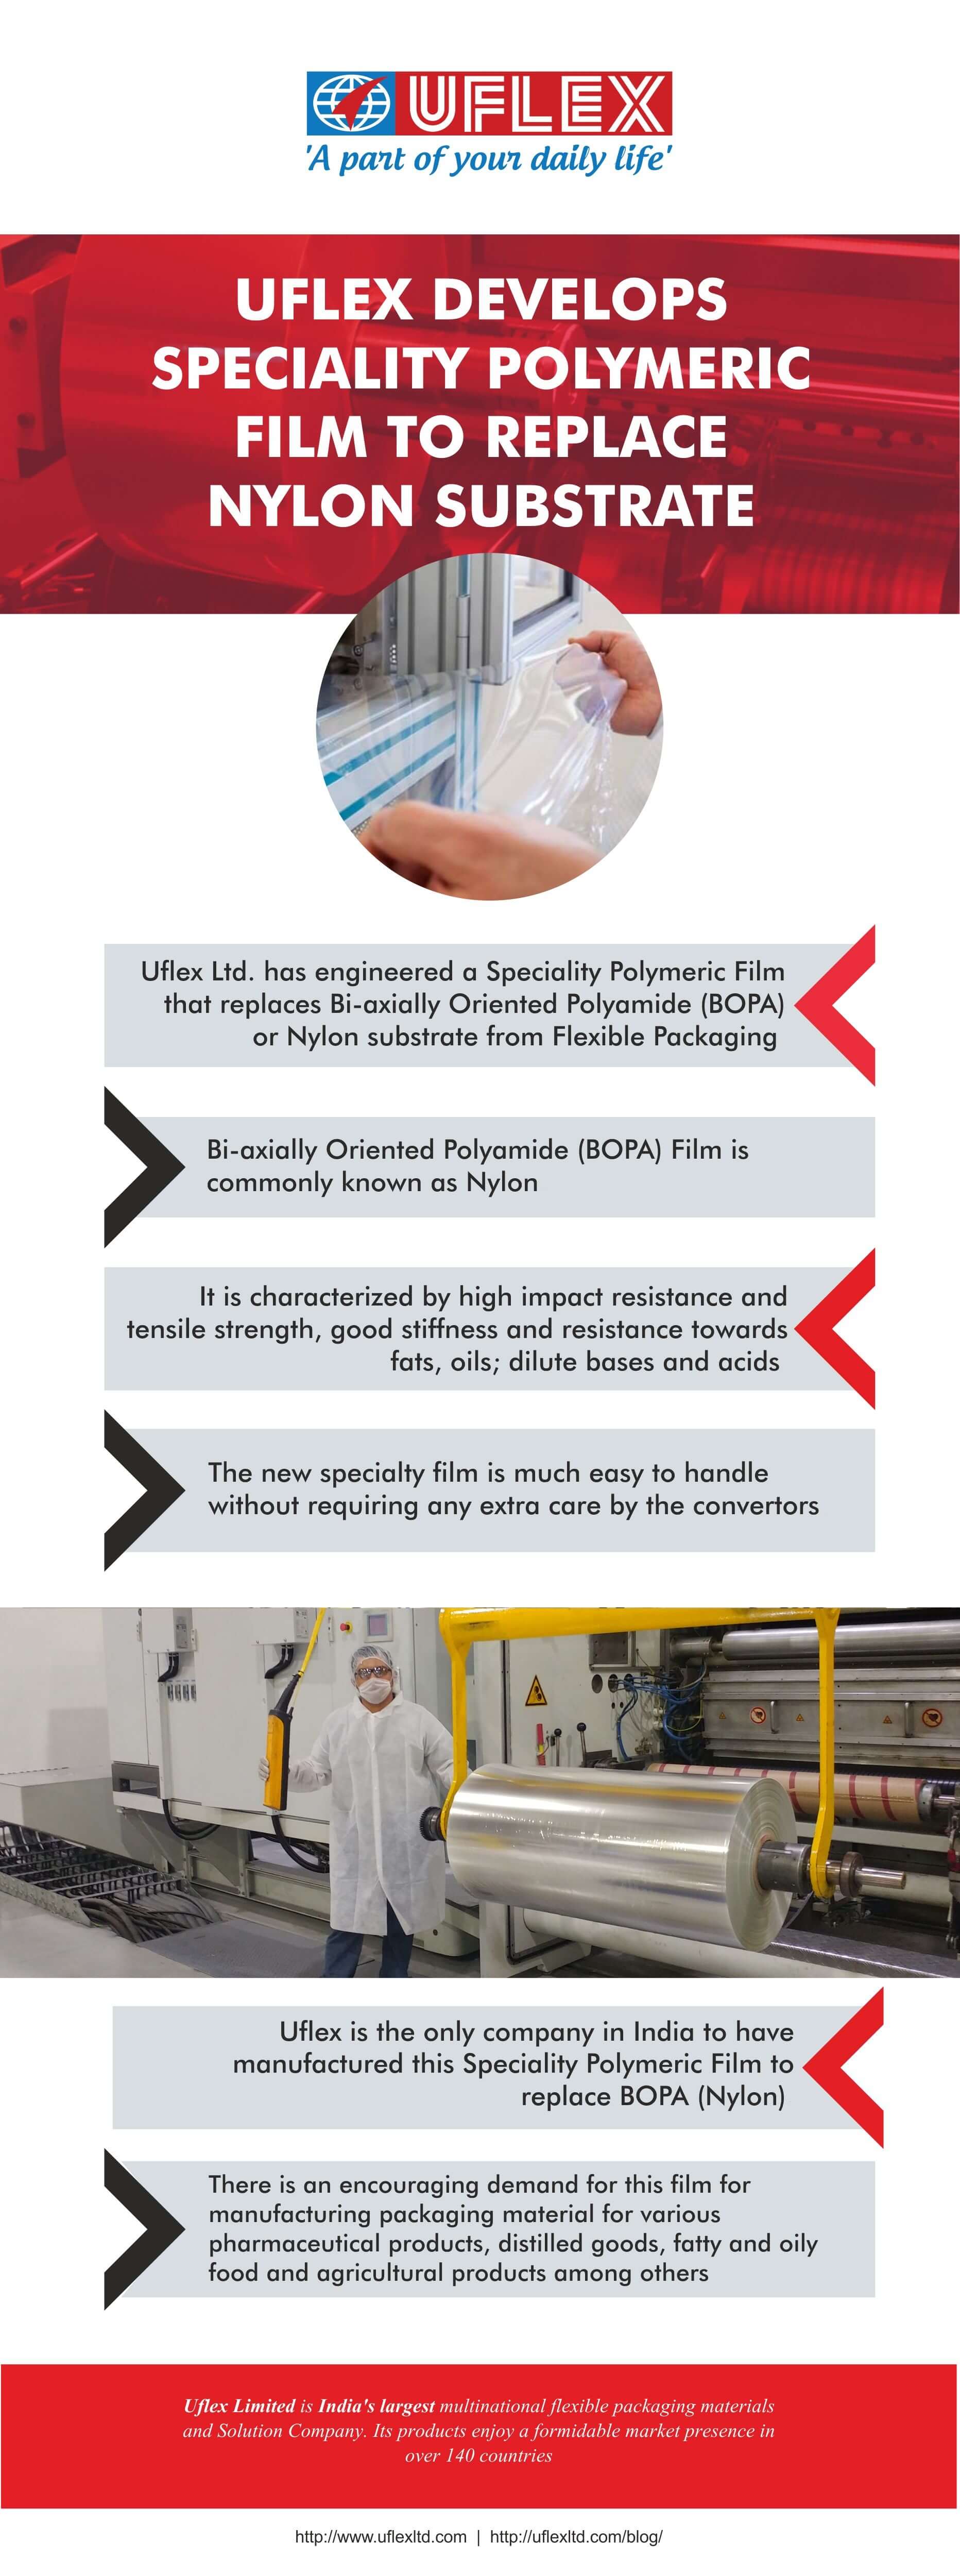 Uflex Develops Speciality Polymeric Film